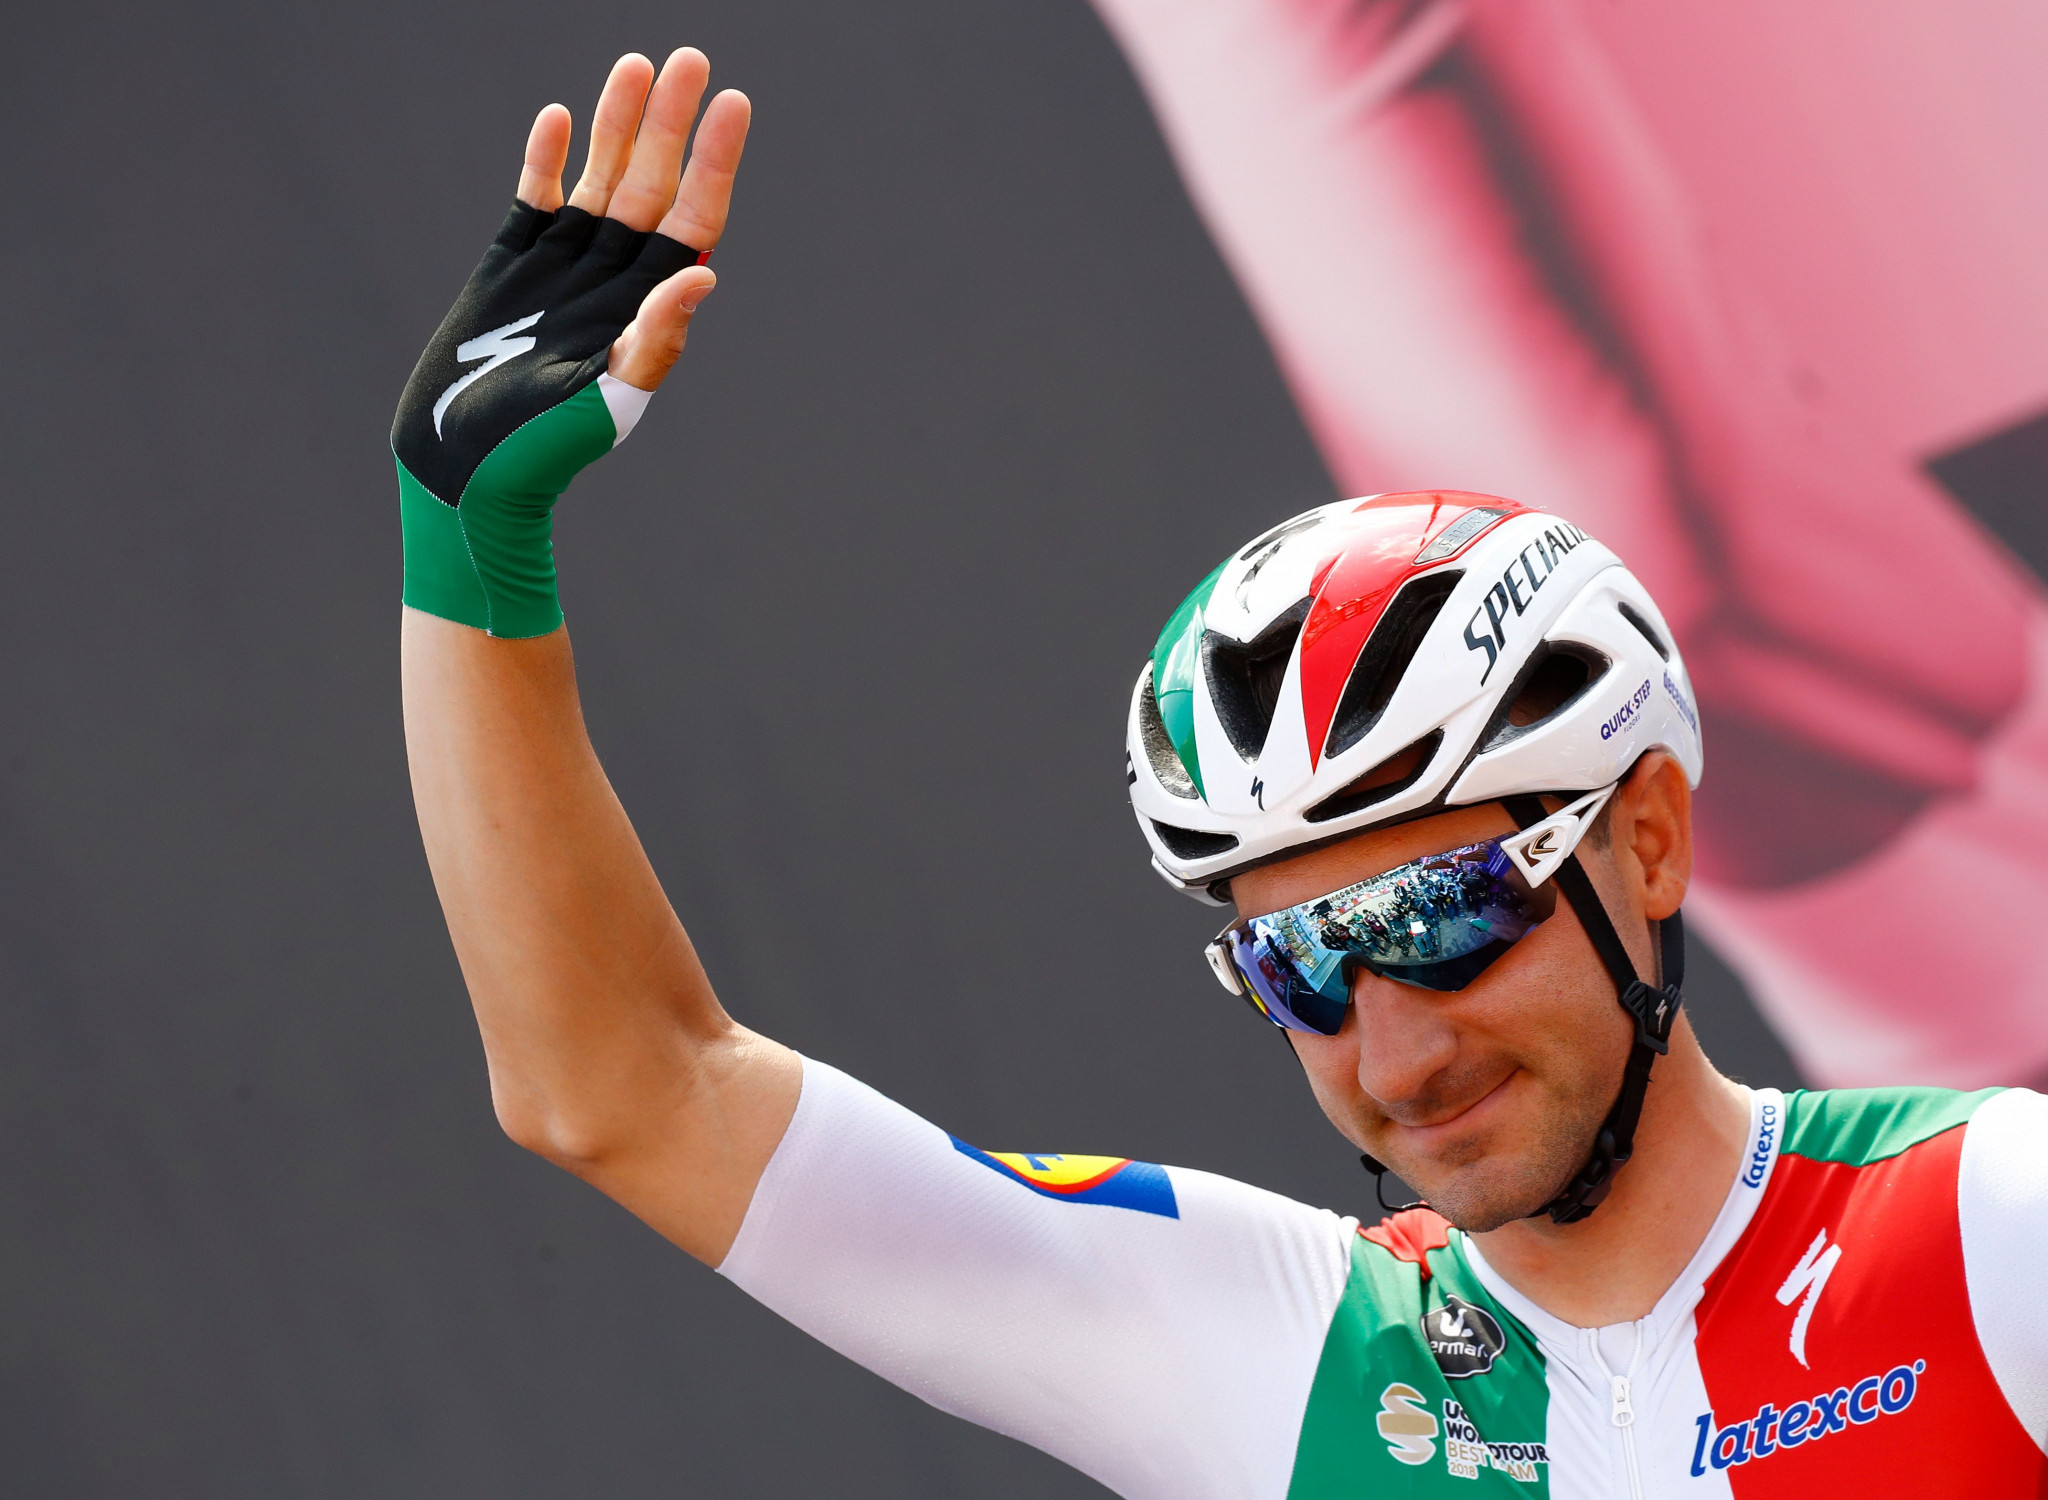 Elia Viviani won stage four of the Tour de Suisse ©Getty Images